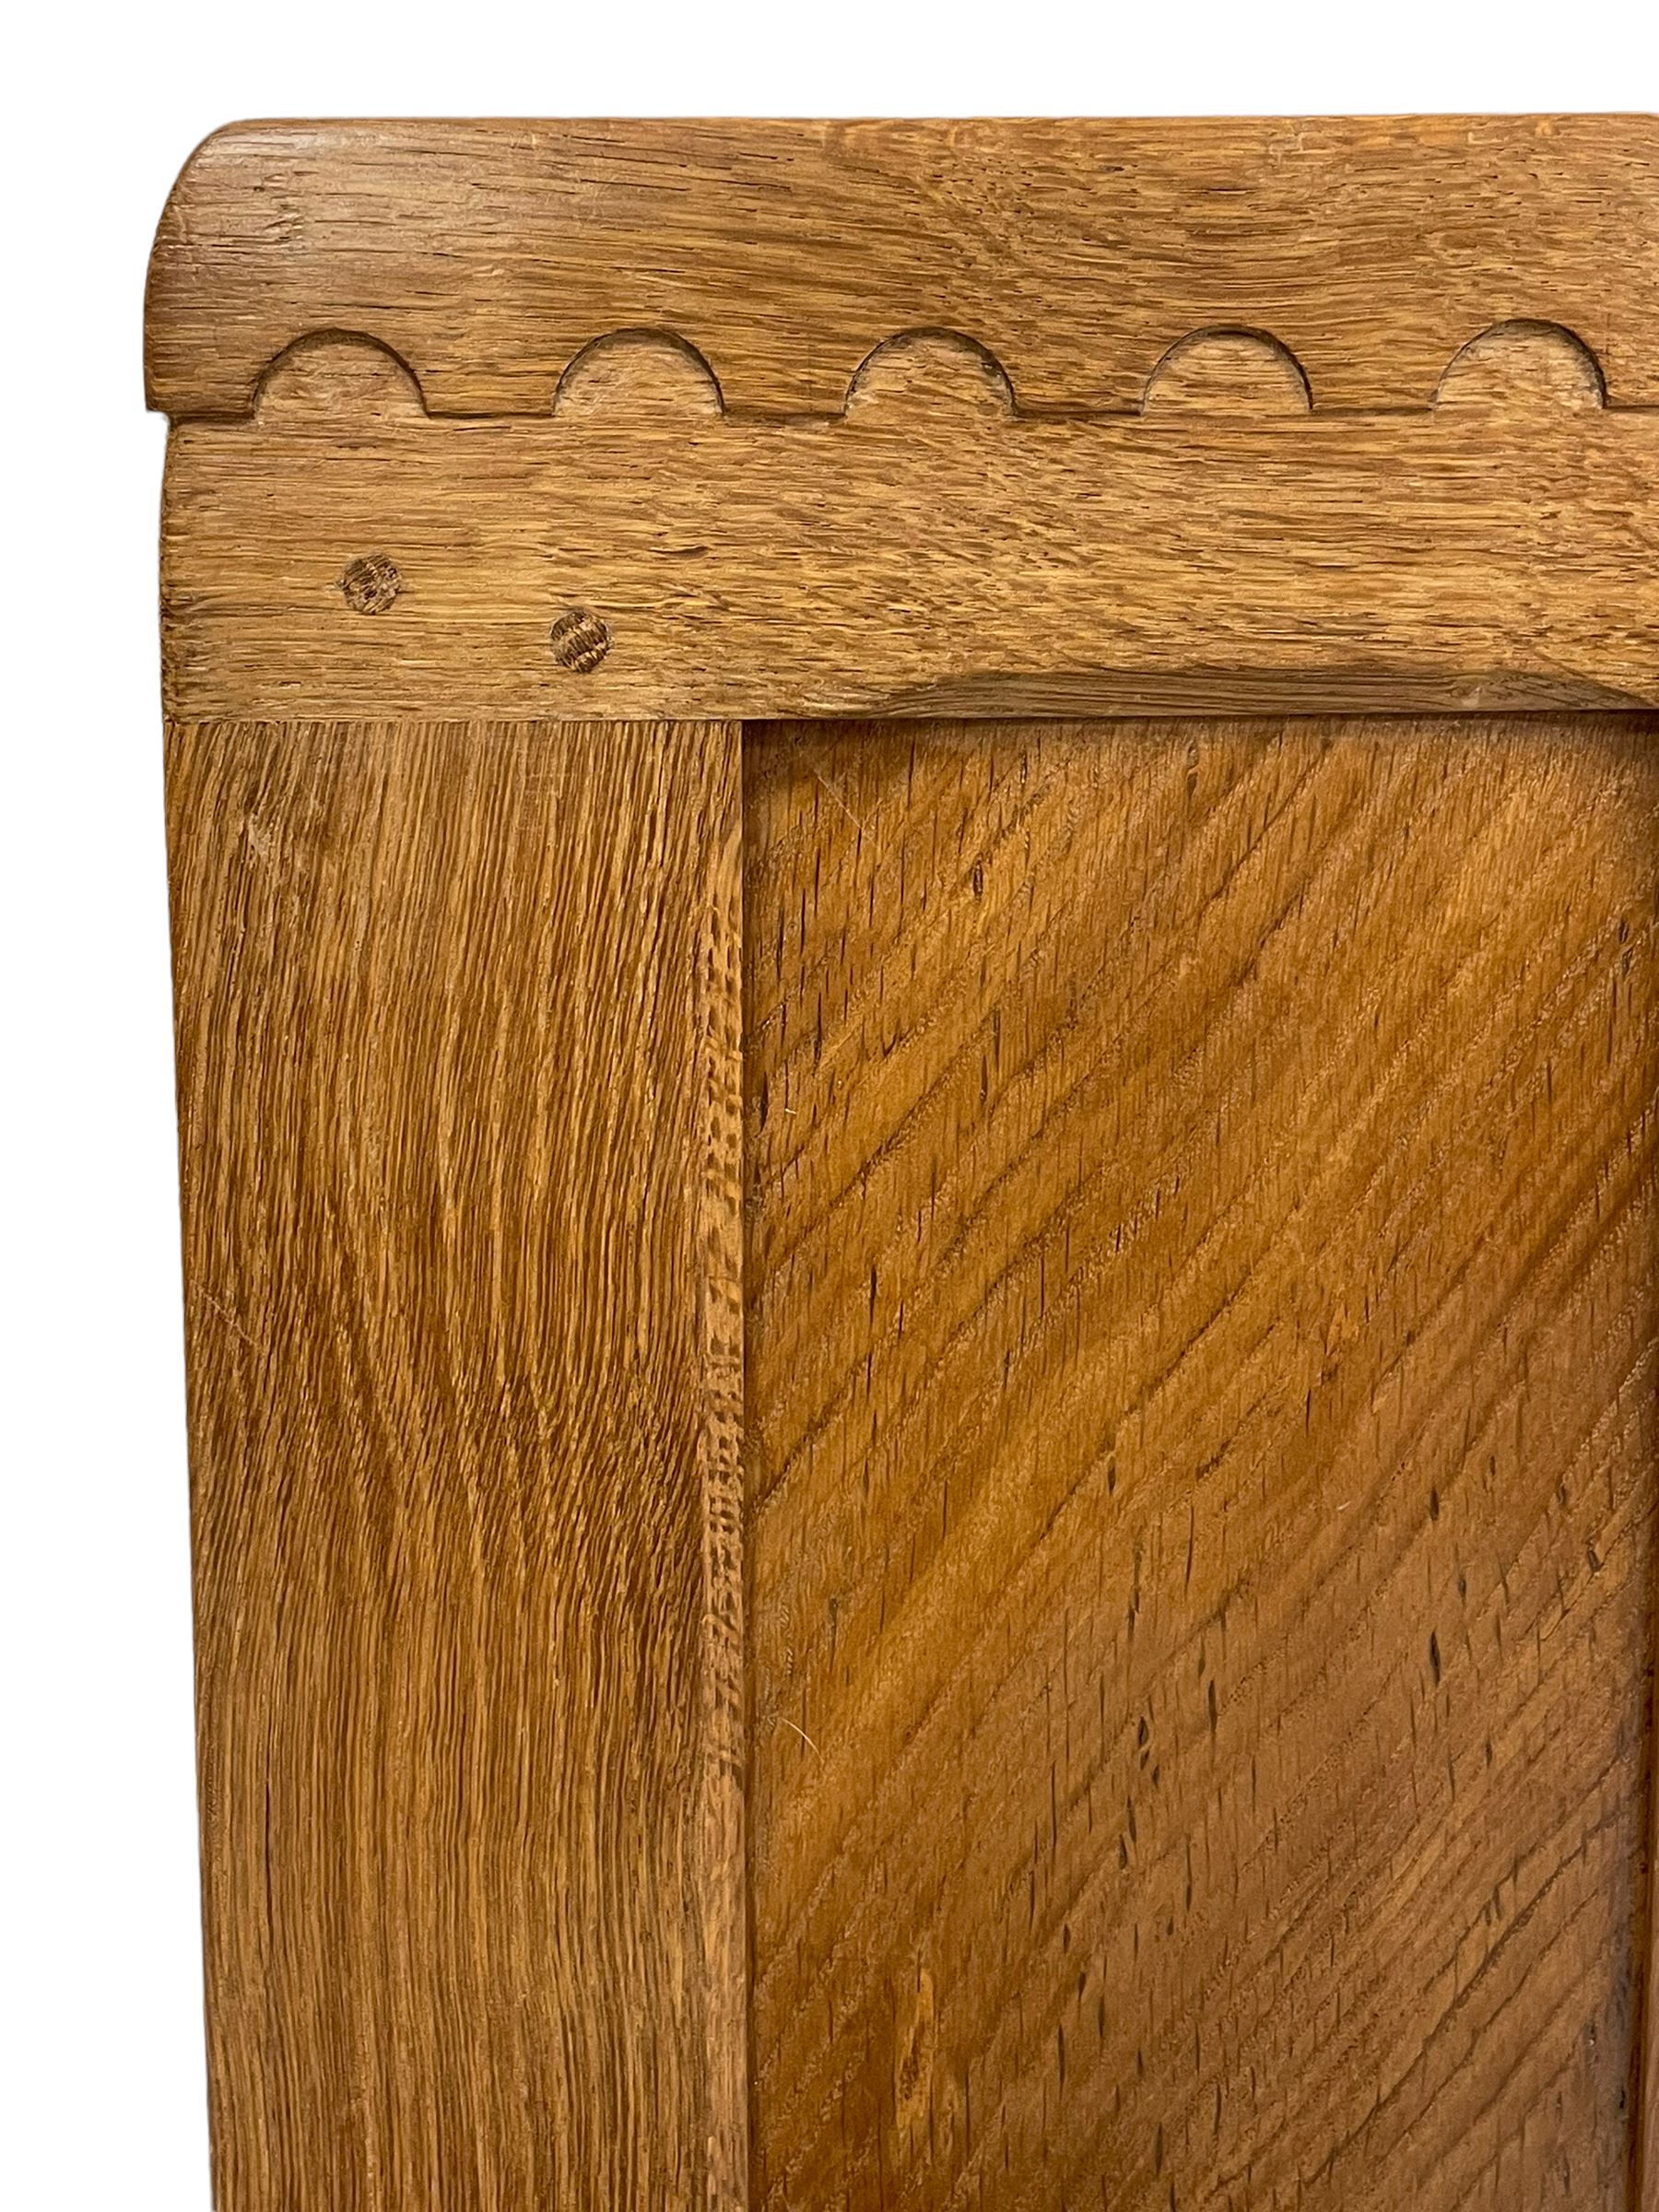 'Oakleafman' pair oak 3' single bed headboards - Image 4 of 6